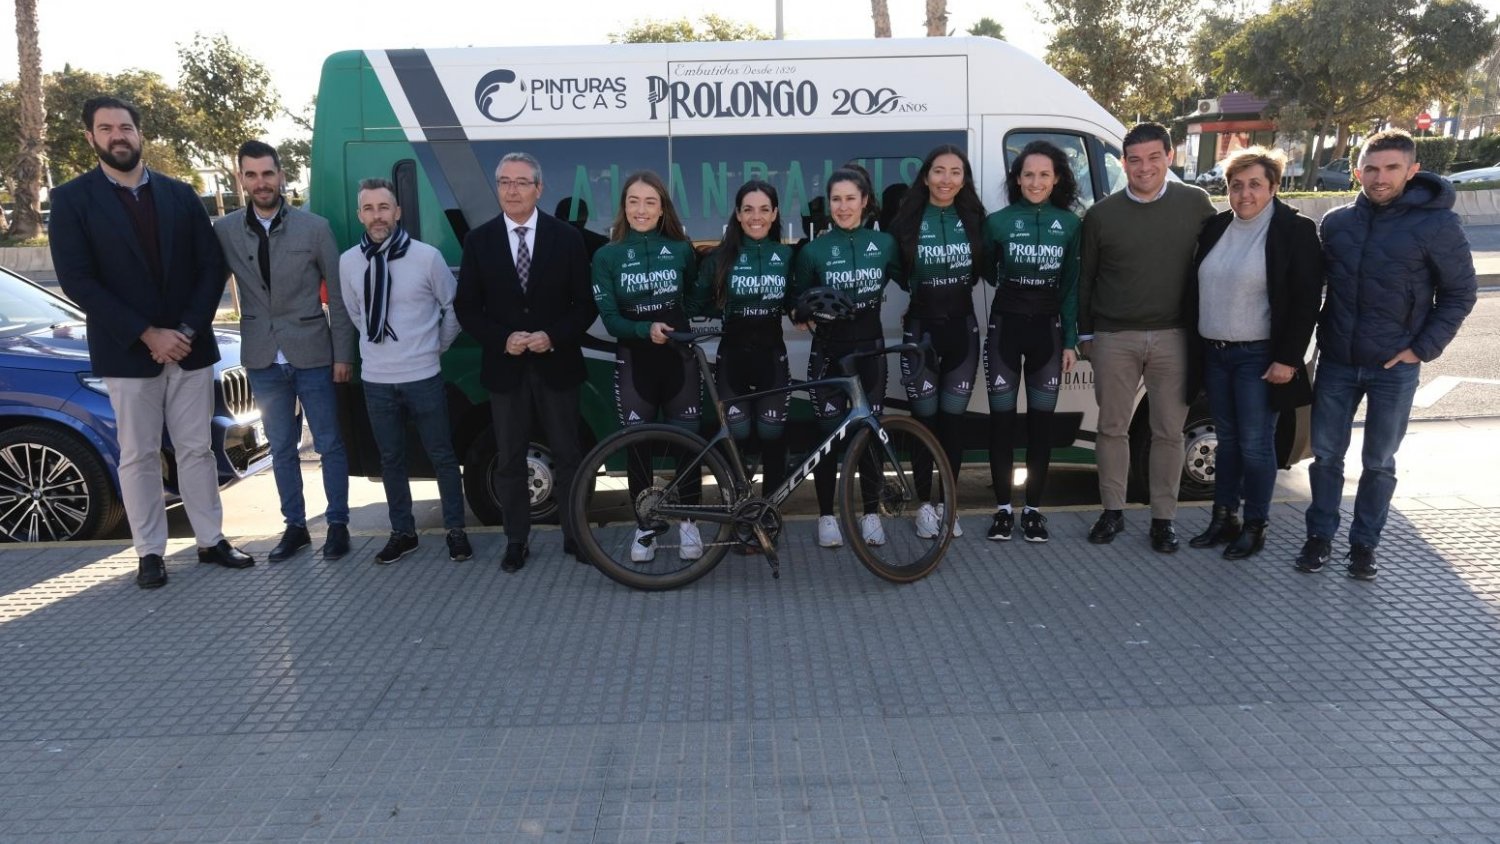 El primer equipo femenino de ciclismo de carretera de Andalucía lucirá en su equipación la marca de la Diputación